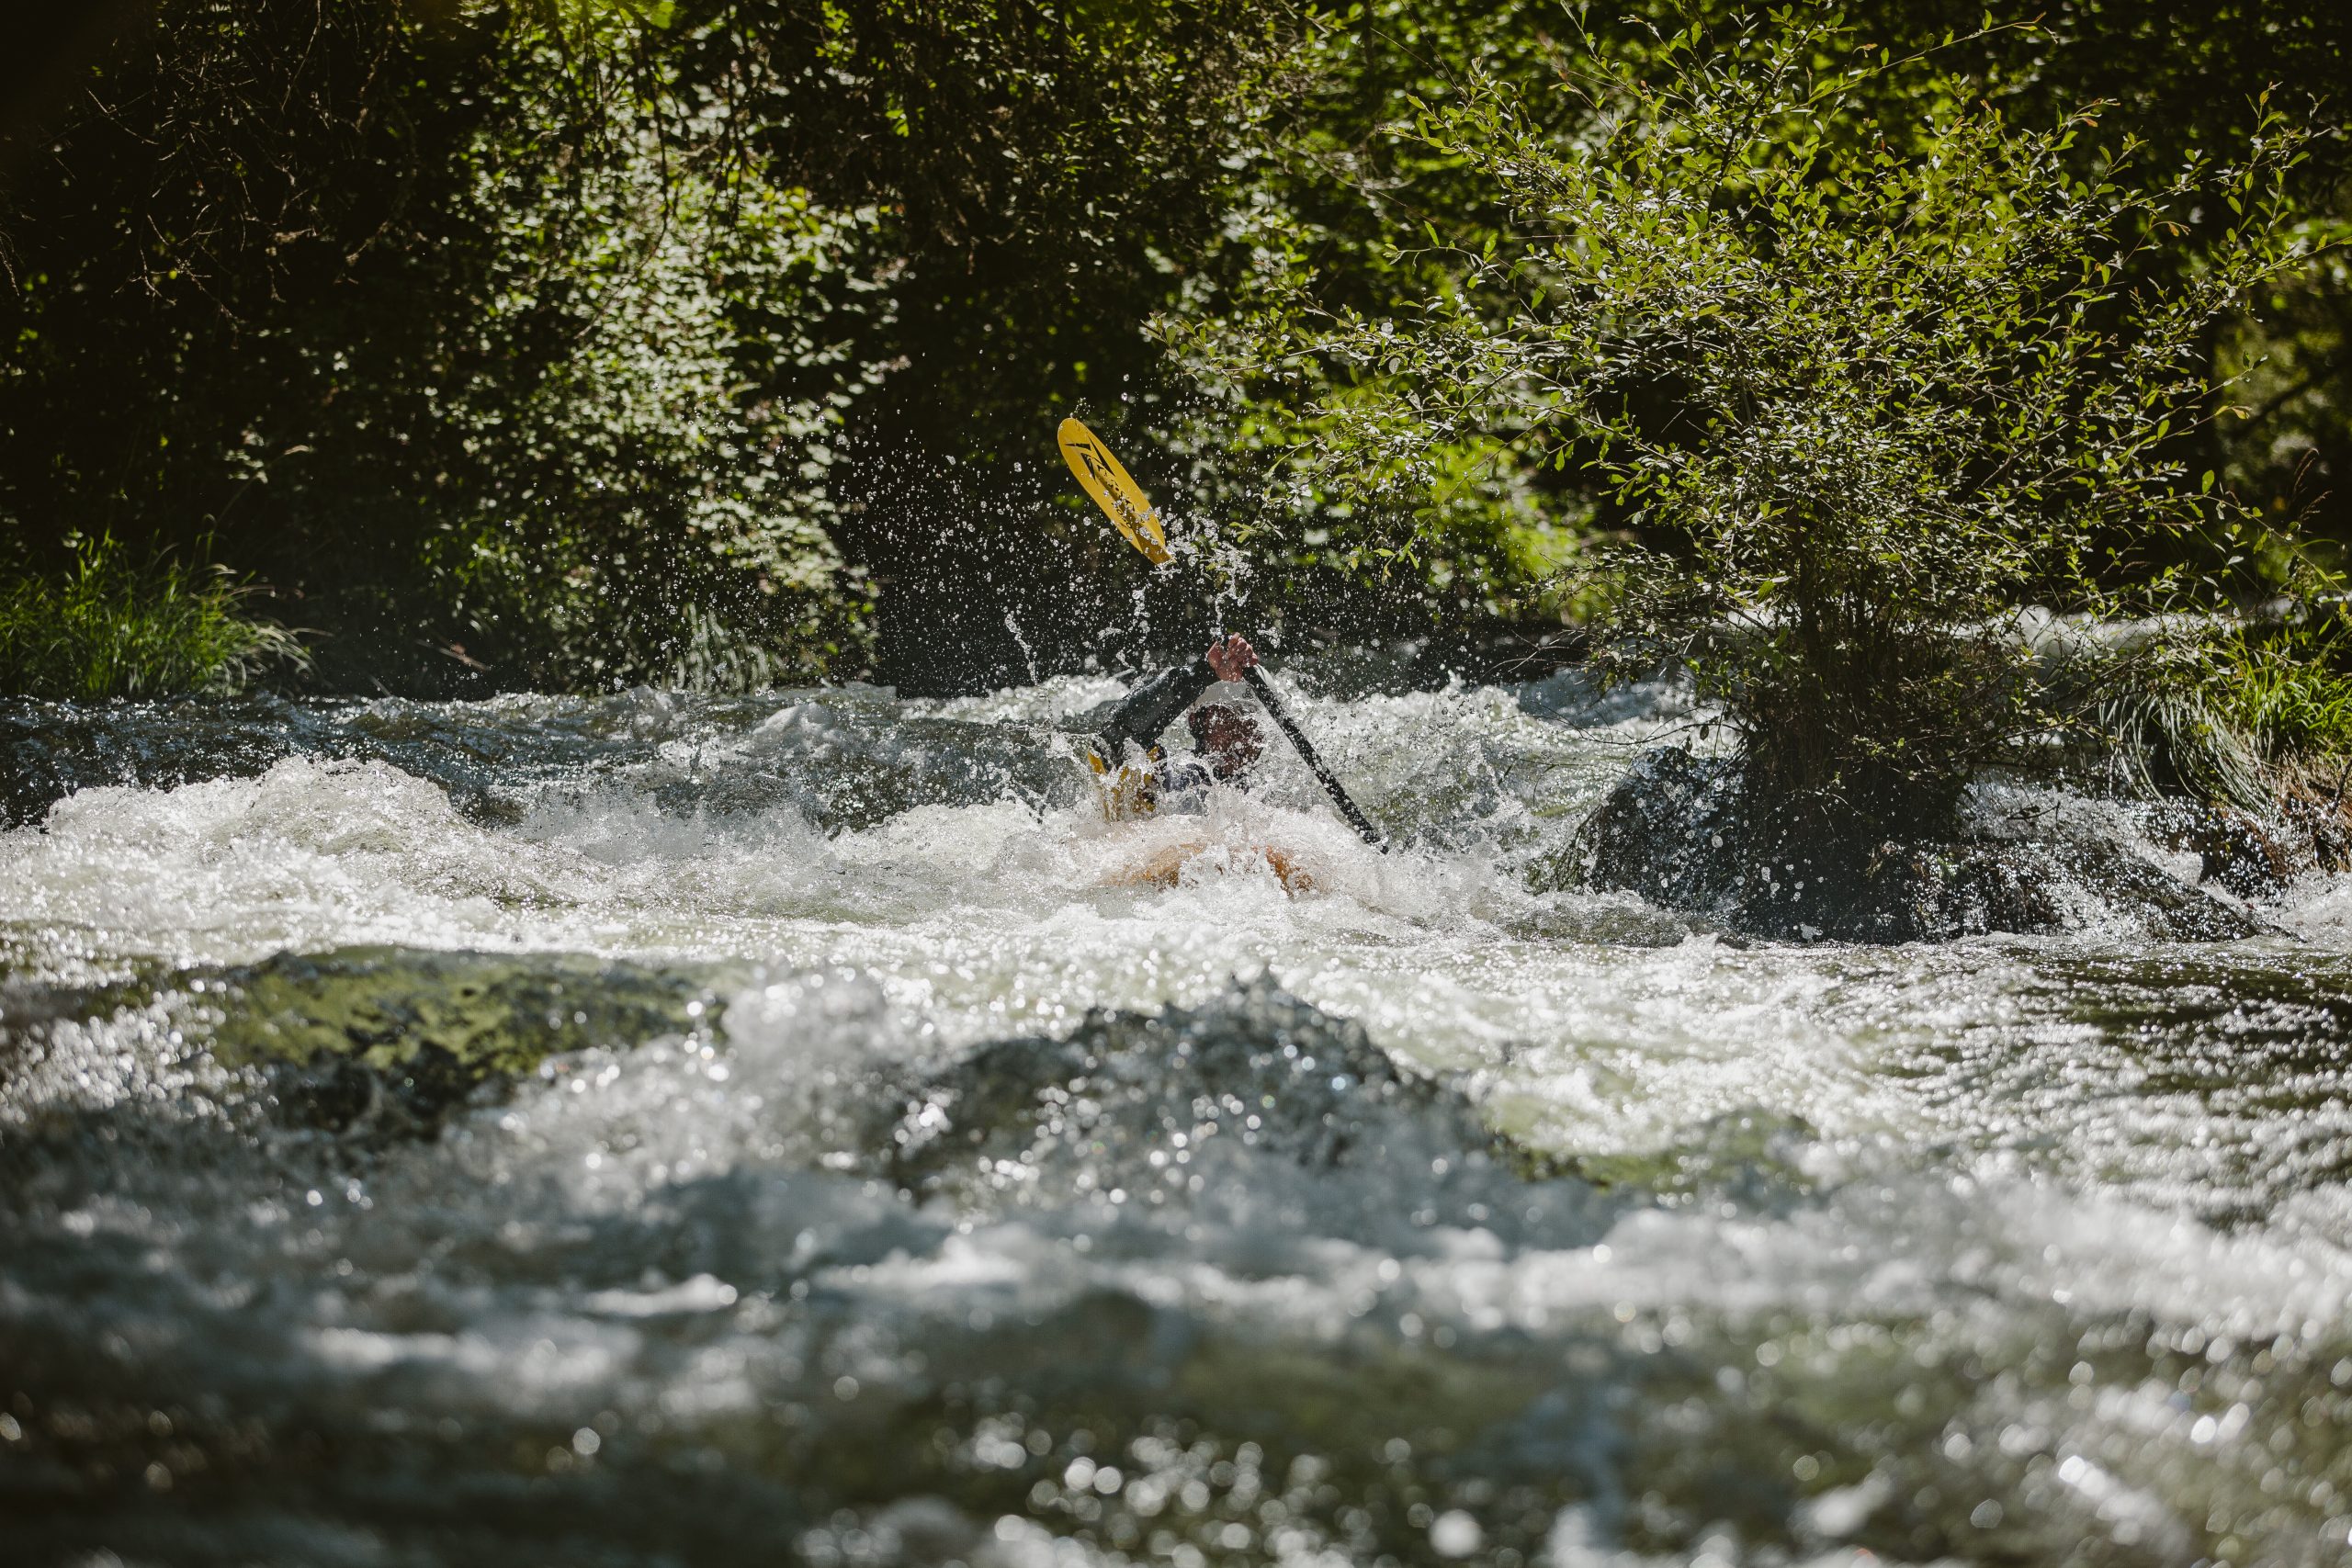 Km lanzado. Río Piqueras. Descenso en piragua. XX competición de Kayak extremo. 24 de julio de 2022.
© Juan San Sebastián. Todos los derechos reservados.